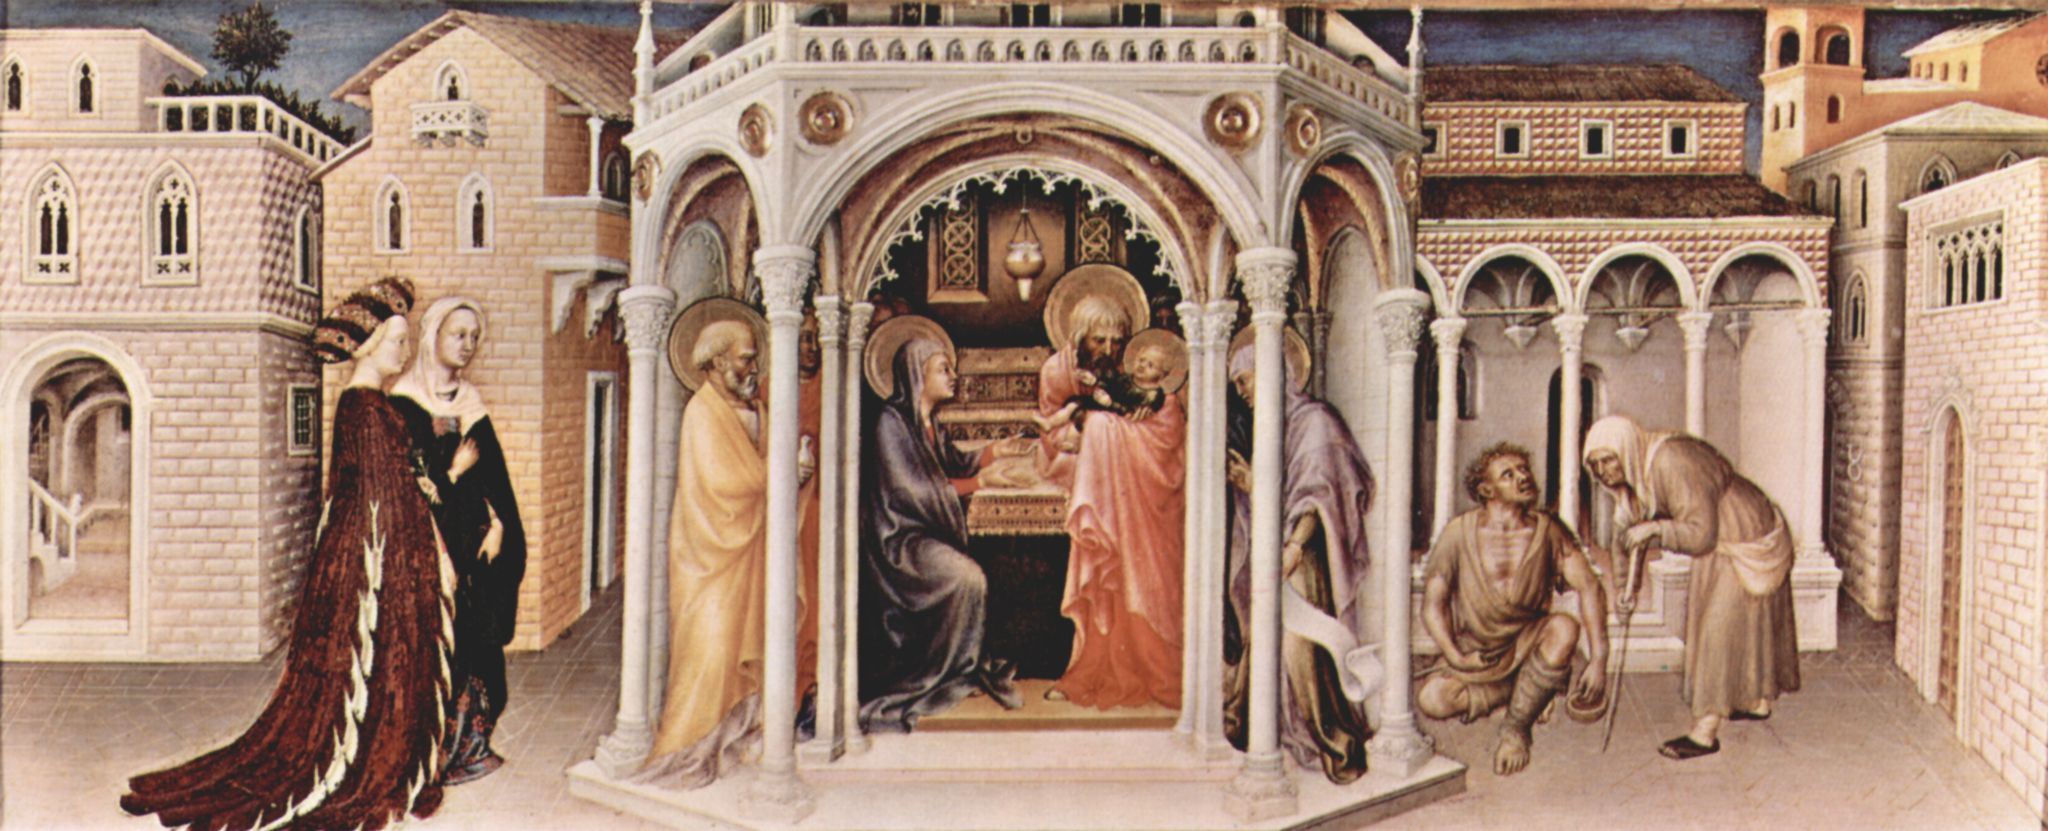 Gentile da Fabriano: Anbetung der Heiligen Drei Knige, linke Predellatafel: Prsentation im Tempel